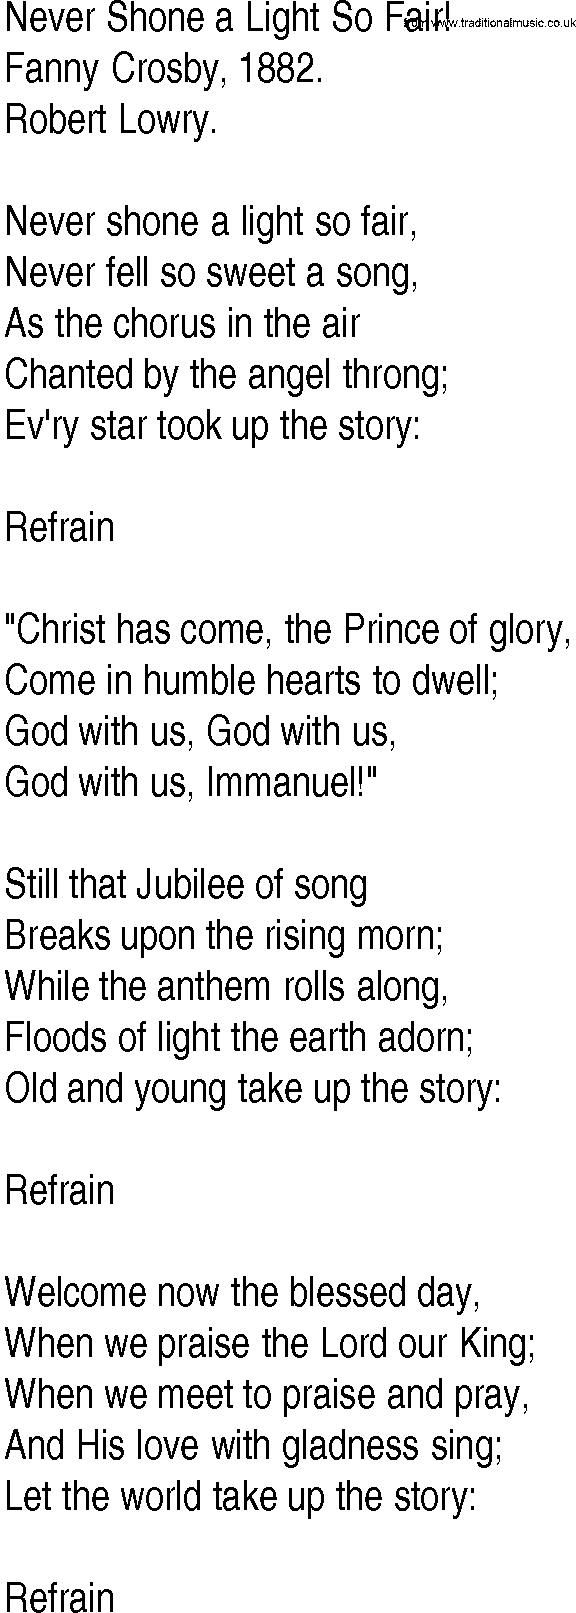 Hymn and Gospel Song: Never Shone a Light So Fair! by Fanny Crosby lyrics